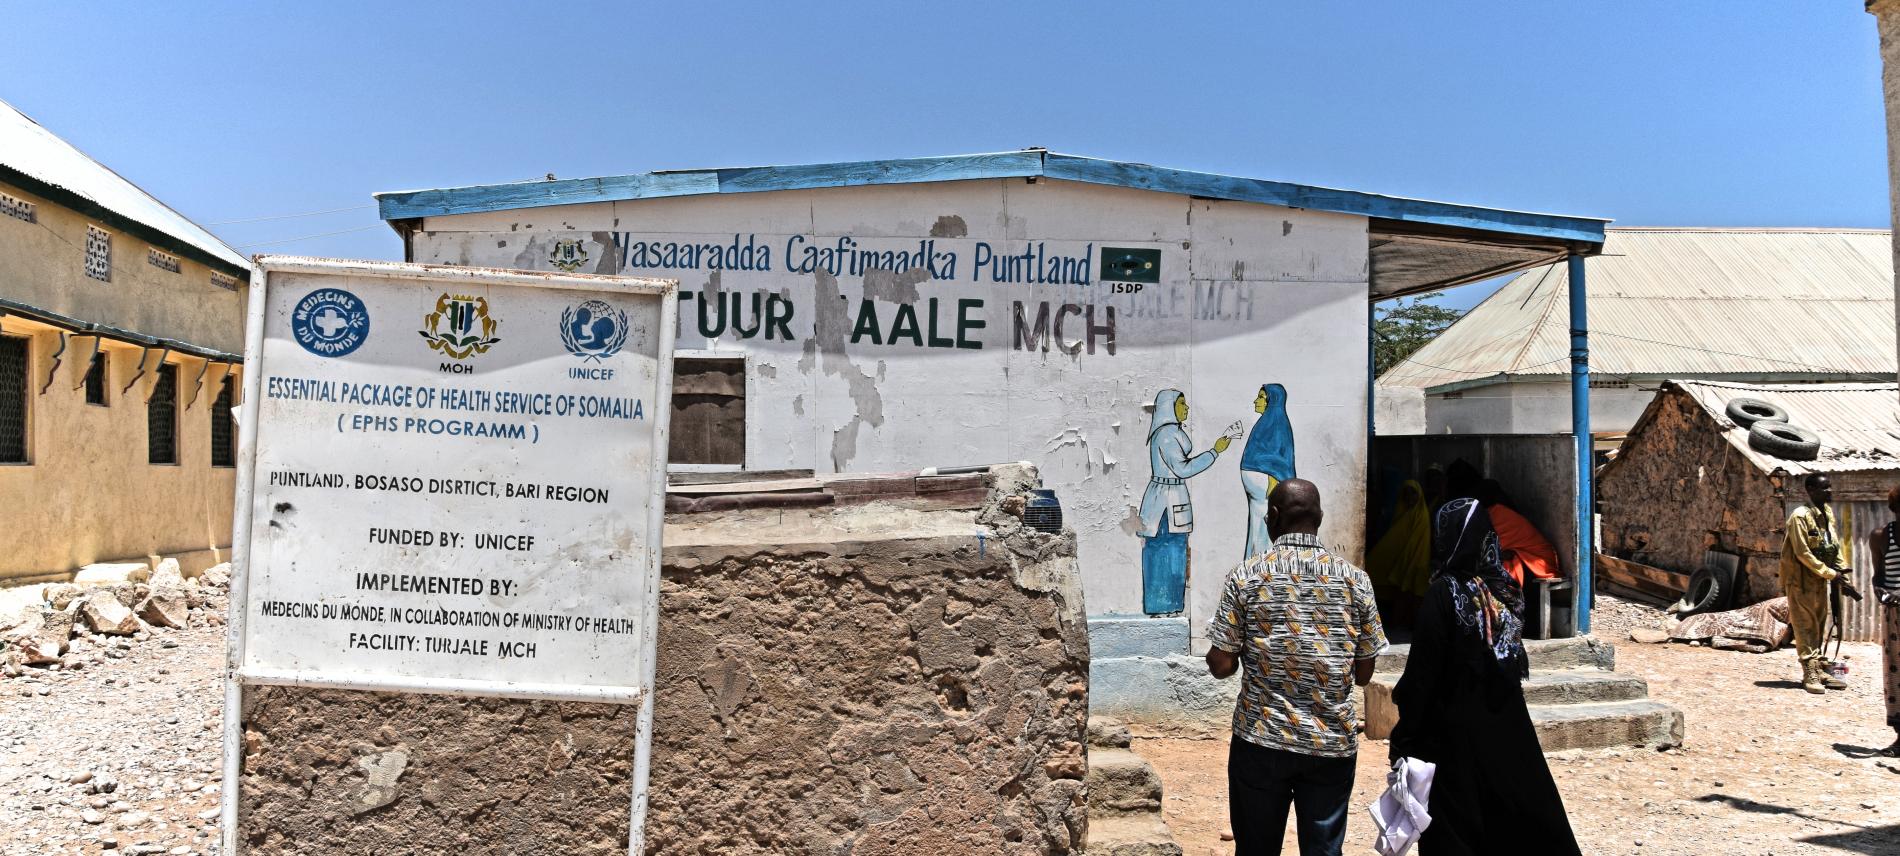 Ein Behandlungszentrum in Somalia. Foto: Jelle Boone